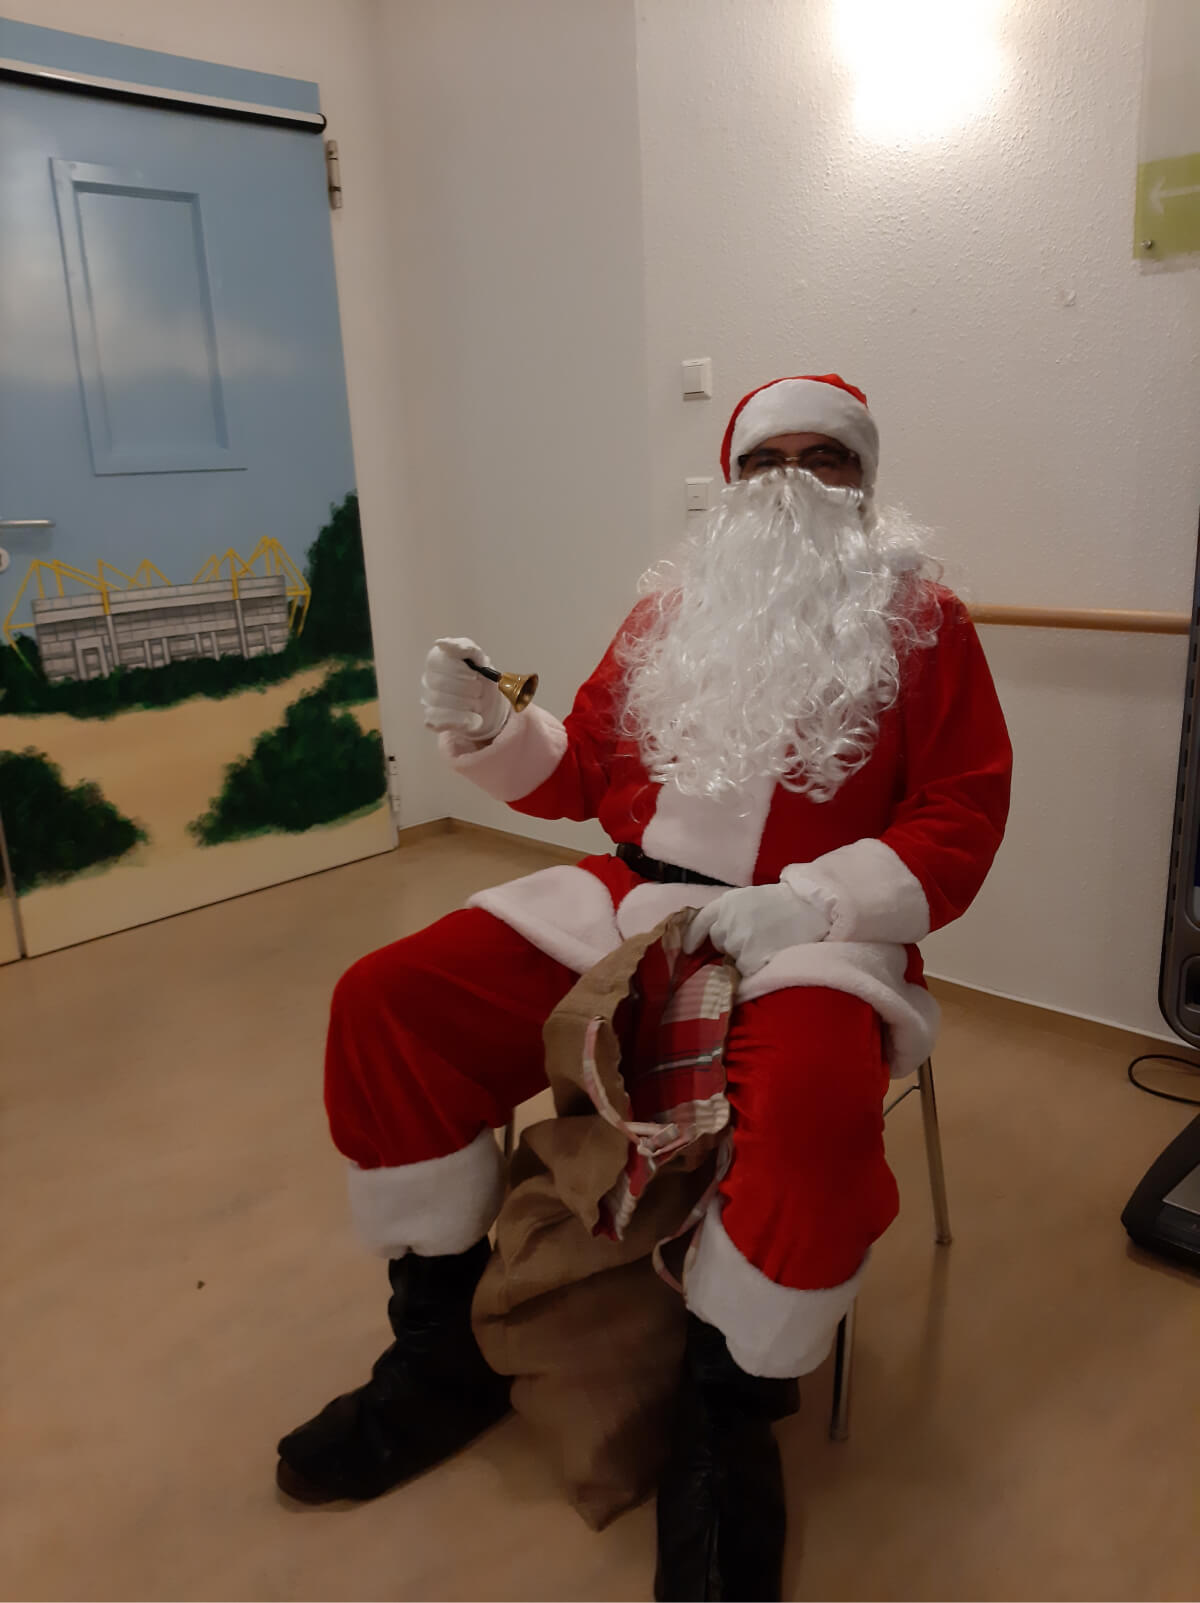 Der Nikolaus klingelt zur Geschenkeverteilung im Seniorenzentrum "Im Kaiserviertel" in Dortmund